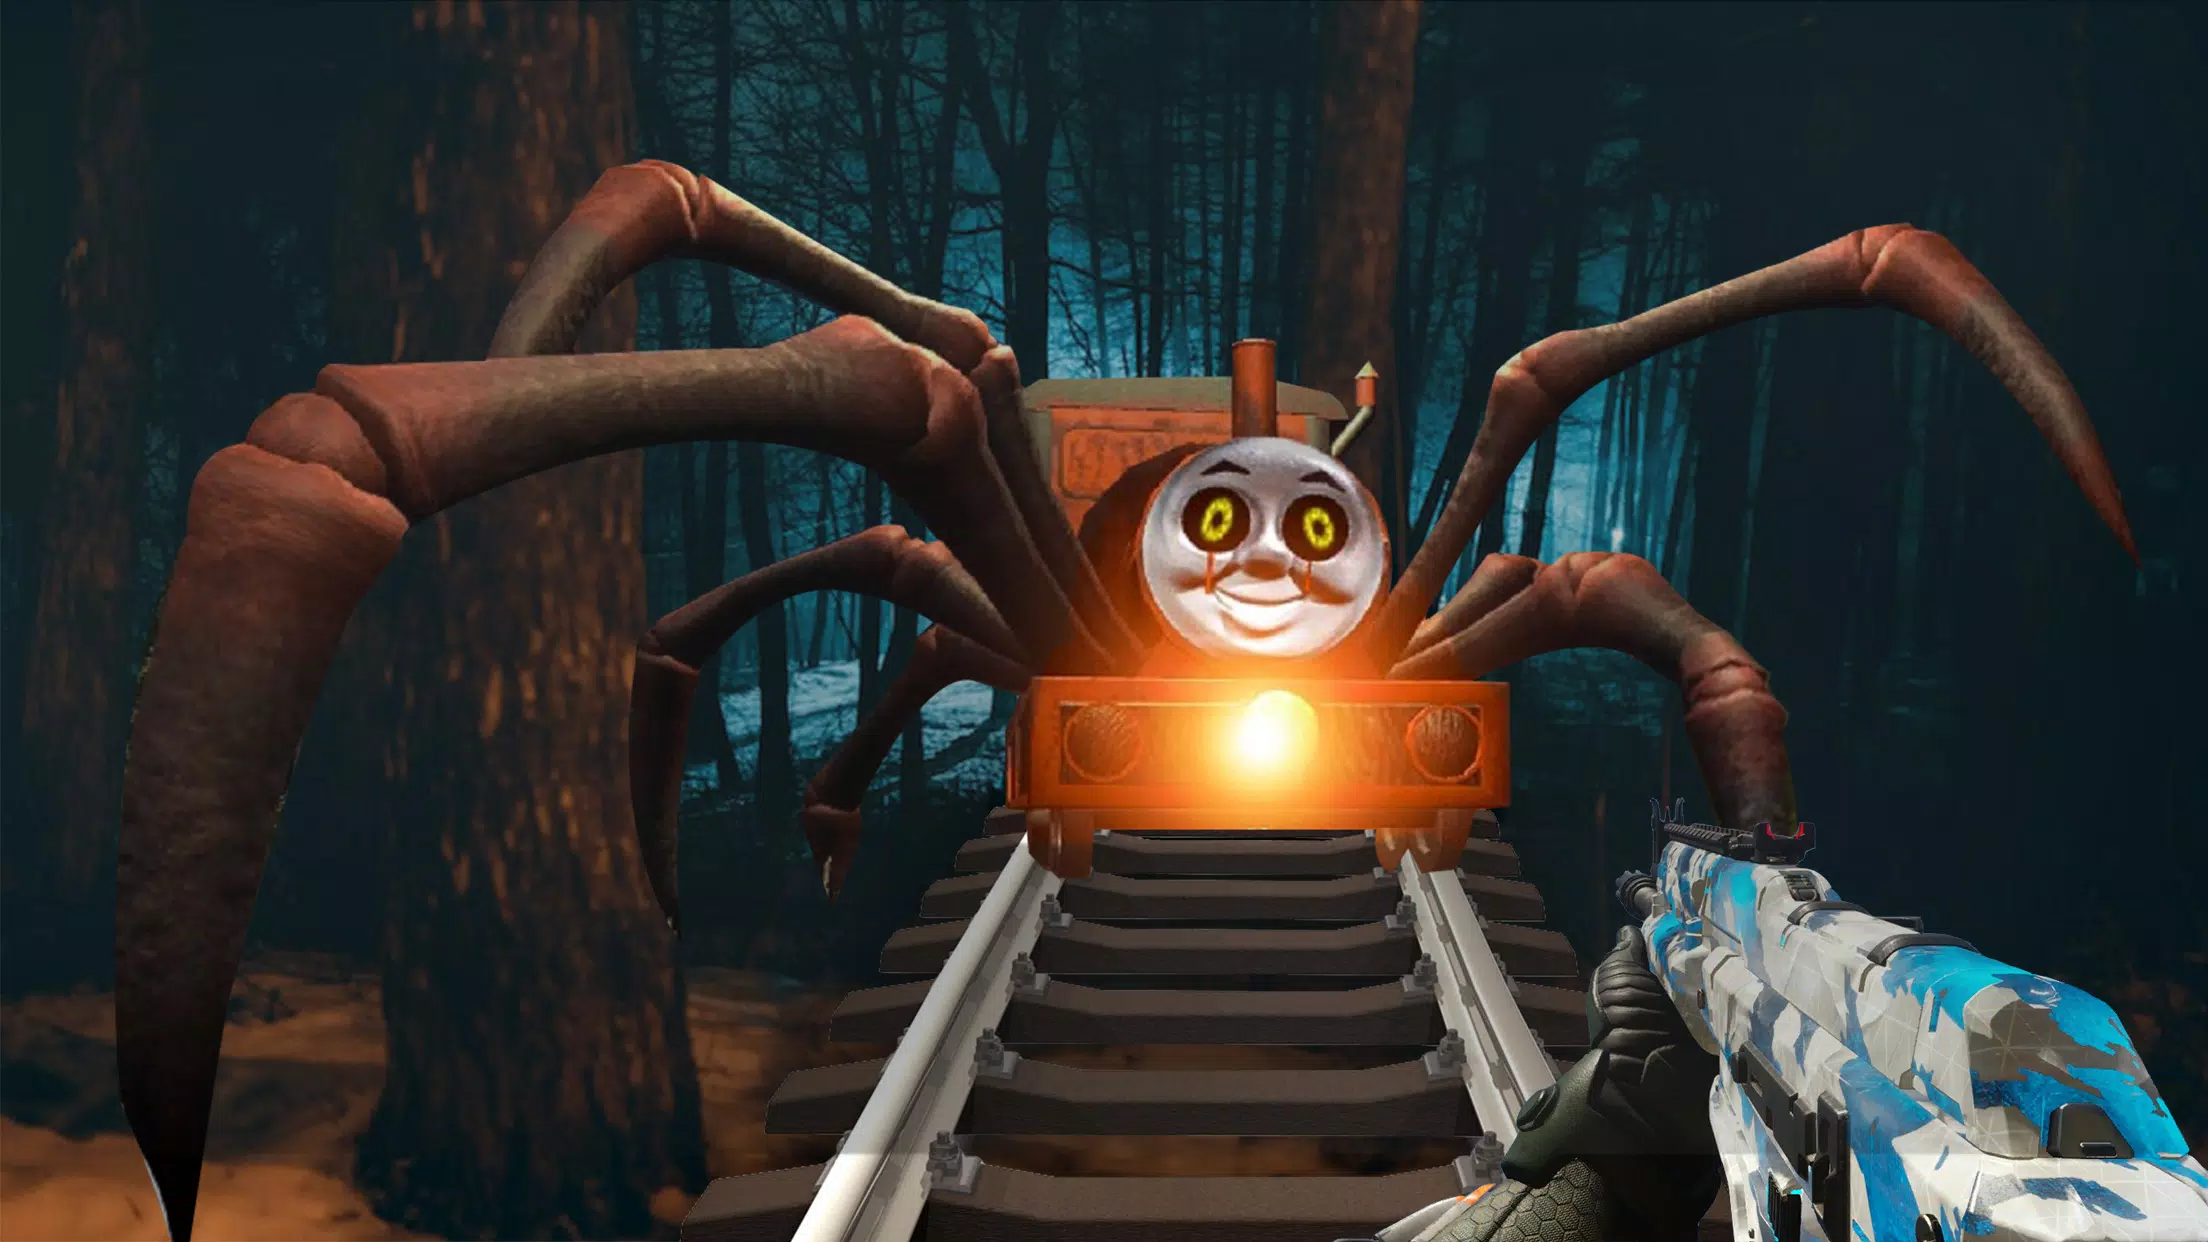 Download do APK de Jogo de terror de trem aranha para Android